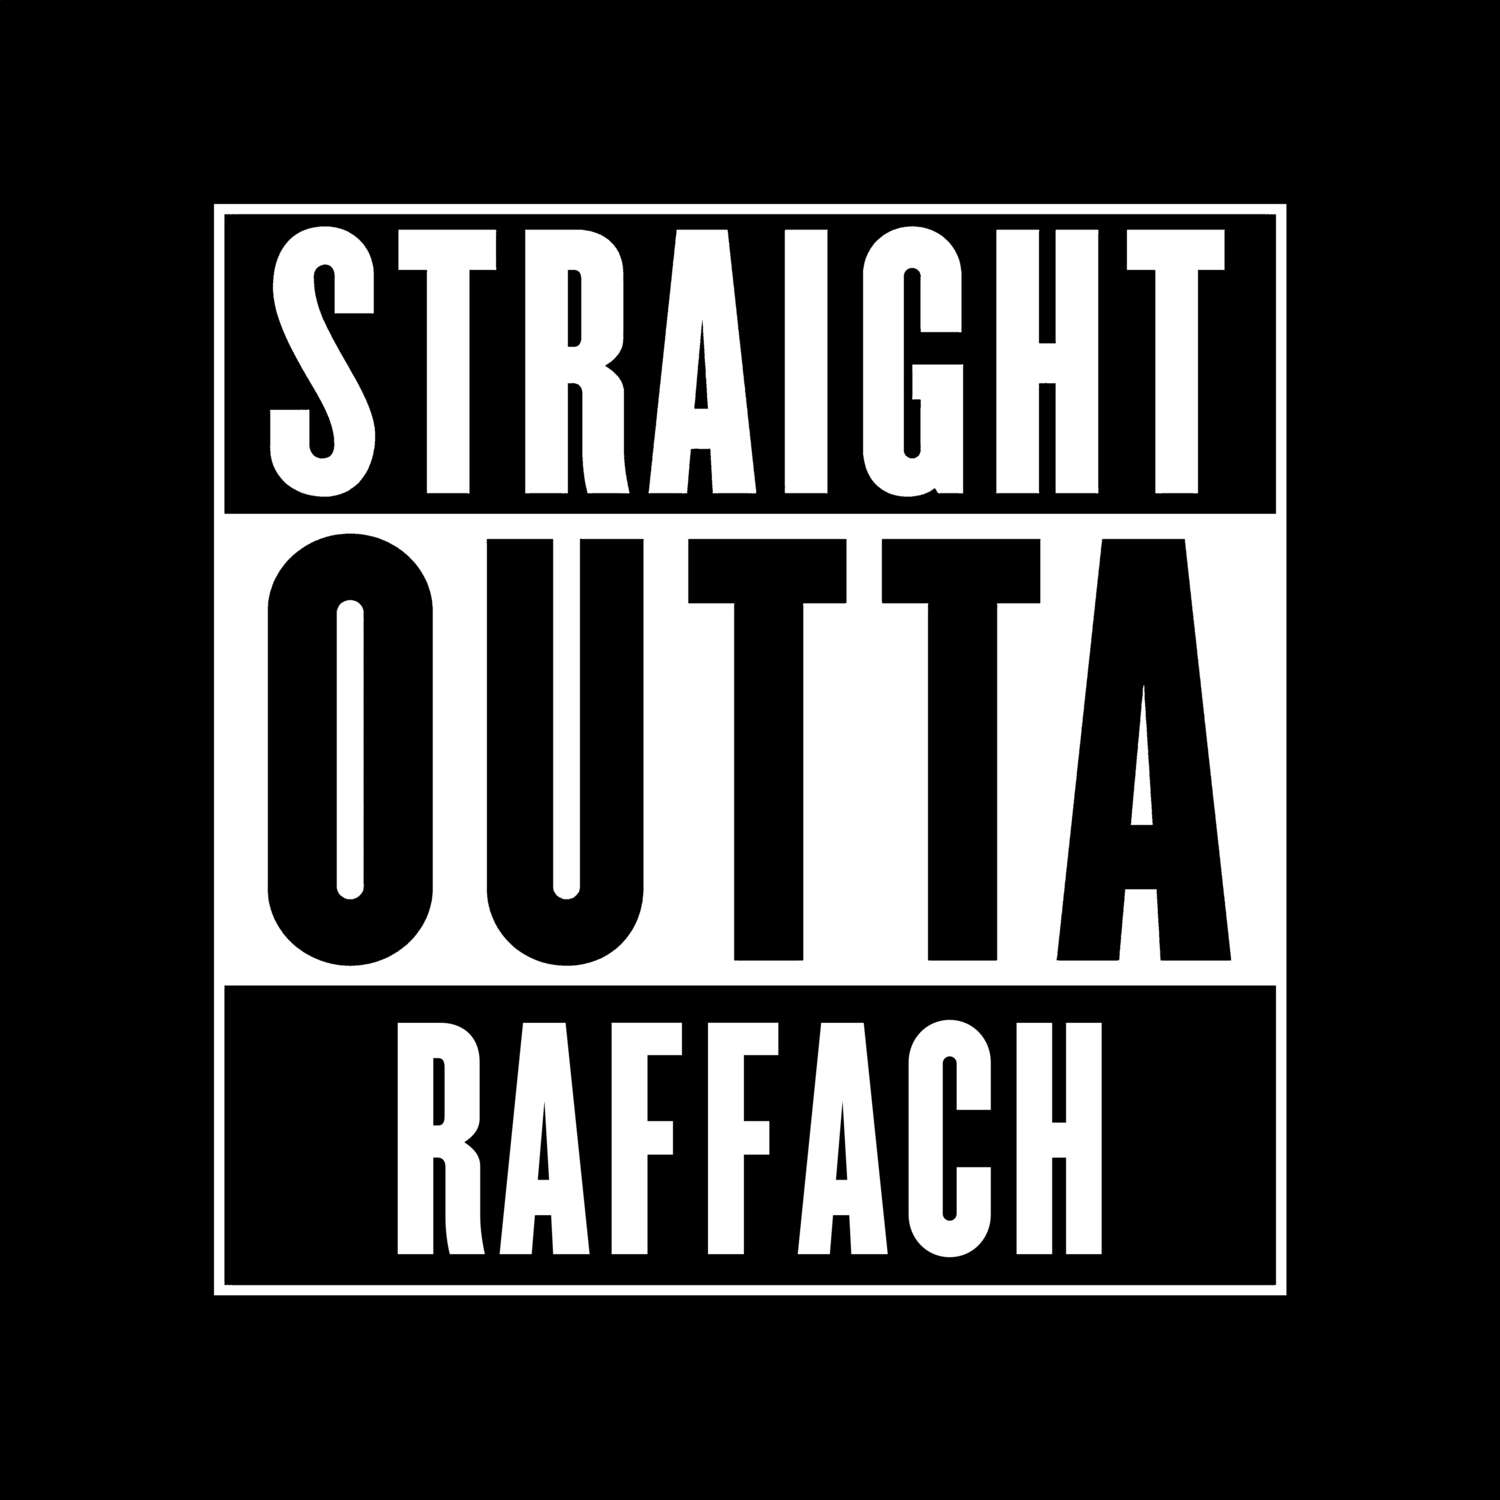 Raffach T-Shirt »Straight Outta«